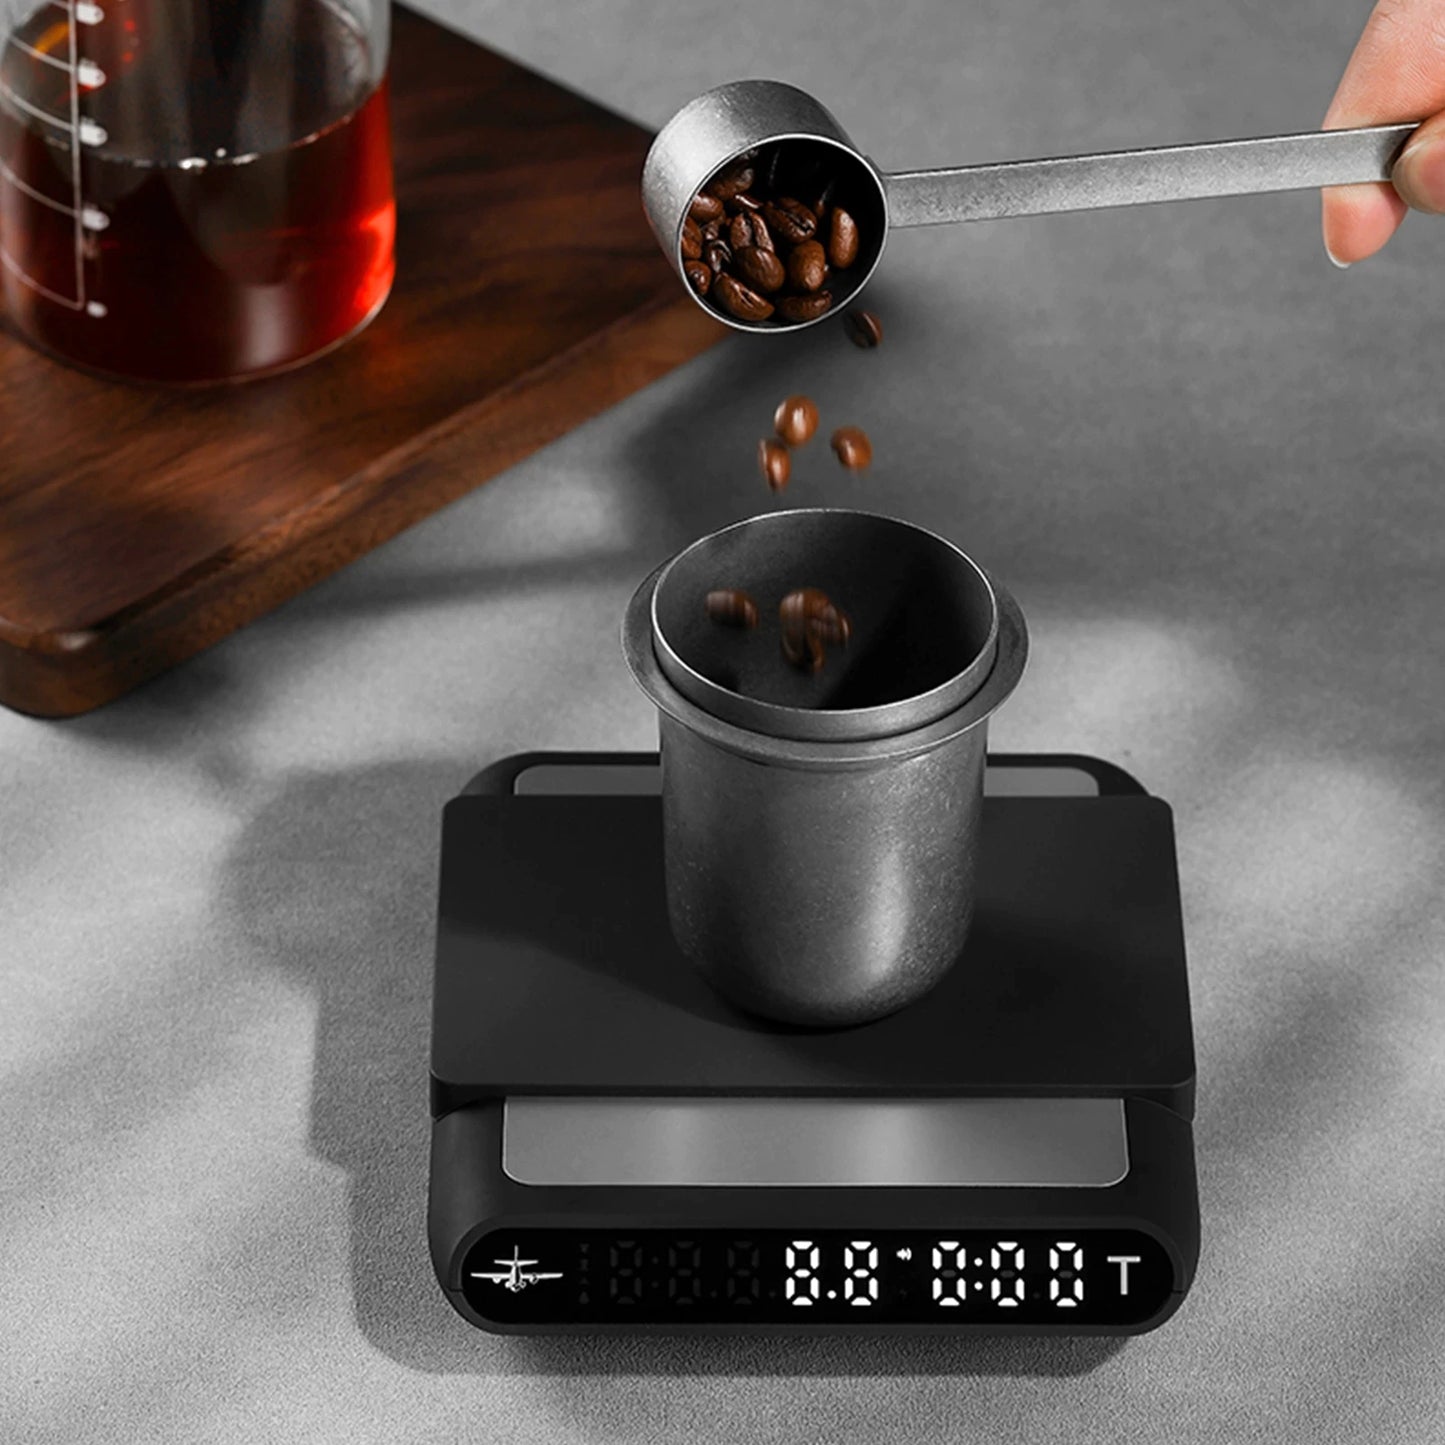 MHW-3BOMBER Smart Drip Espresso Coffee Scale